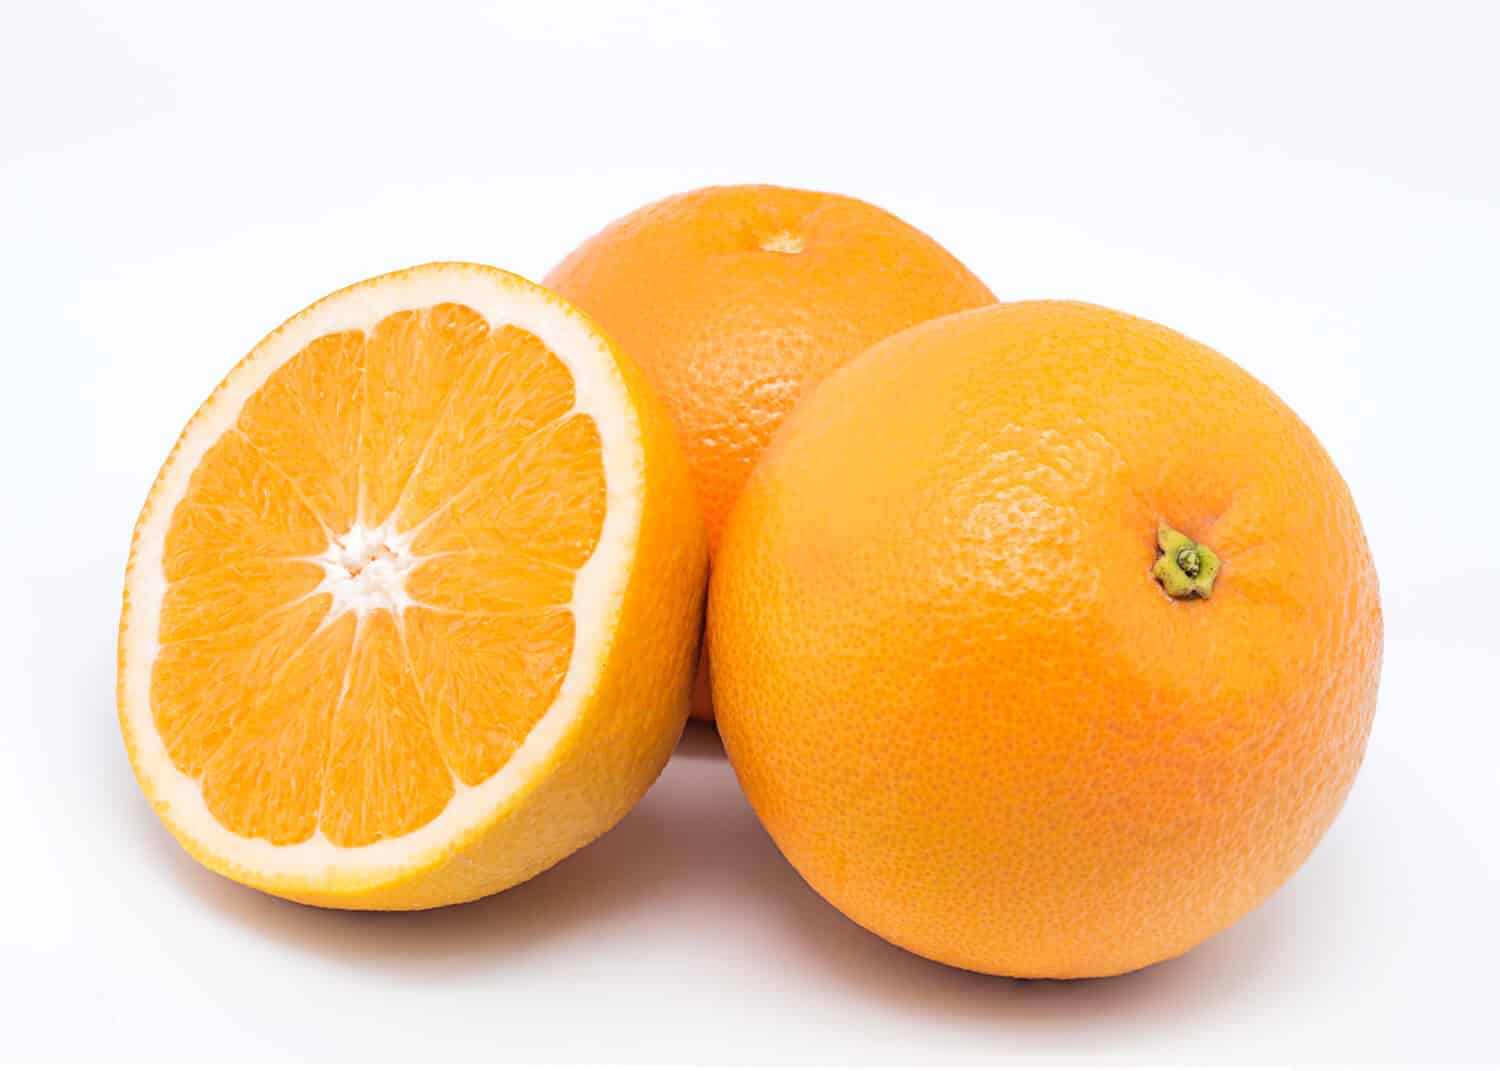 Valencia oranges on white background